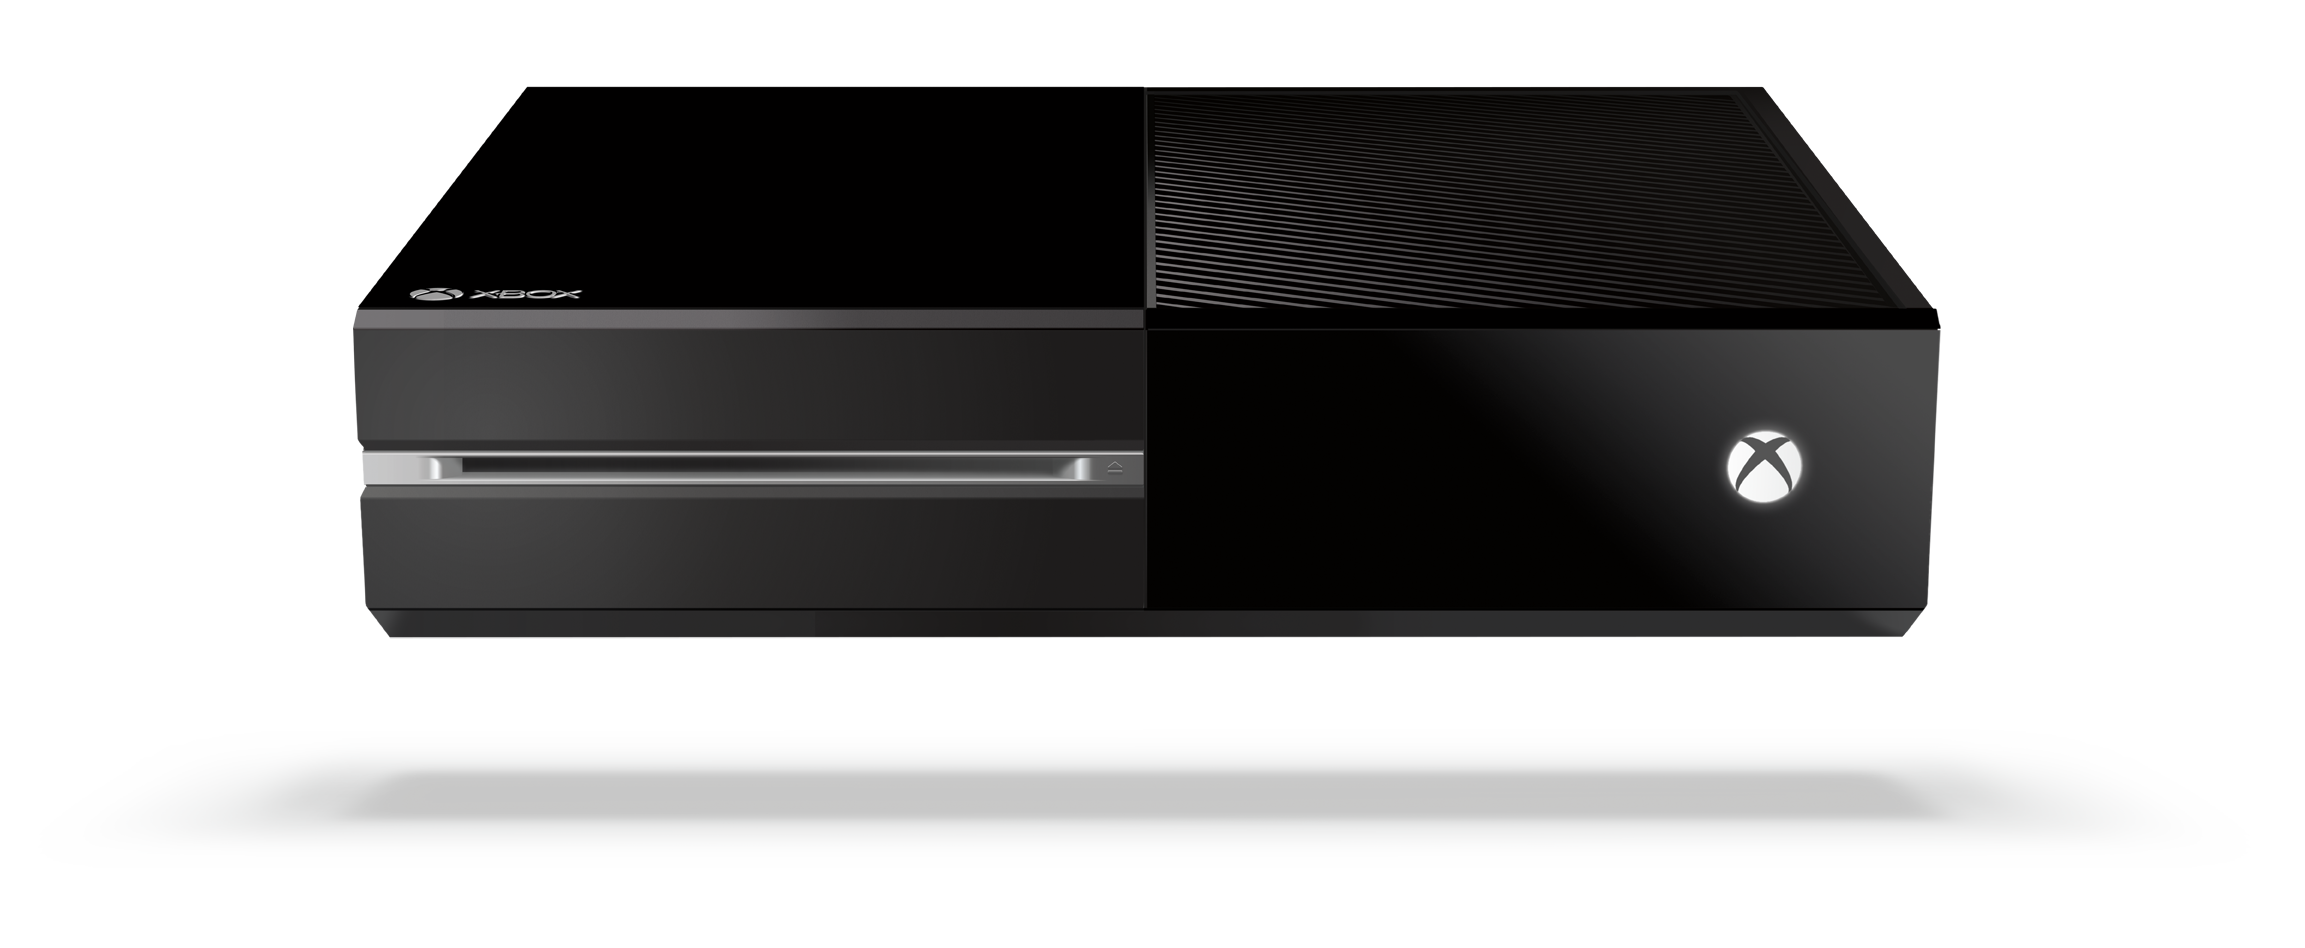 Microsoft Anuncia O Xbox One Seu Novo Console Da Pr Xima Gera